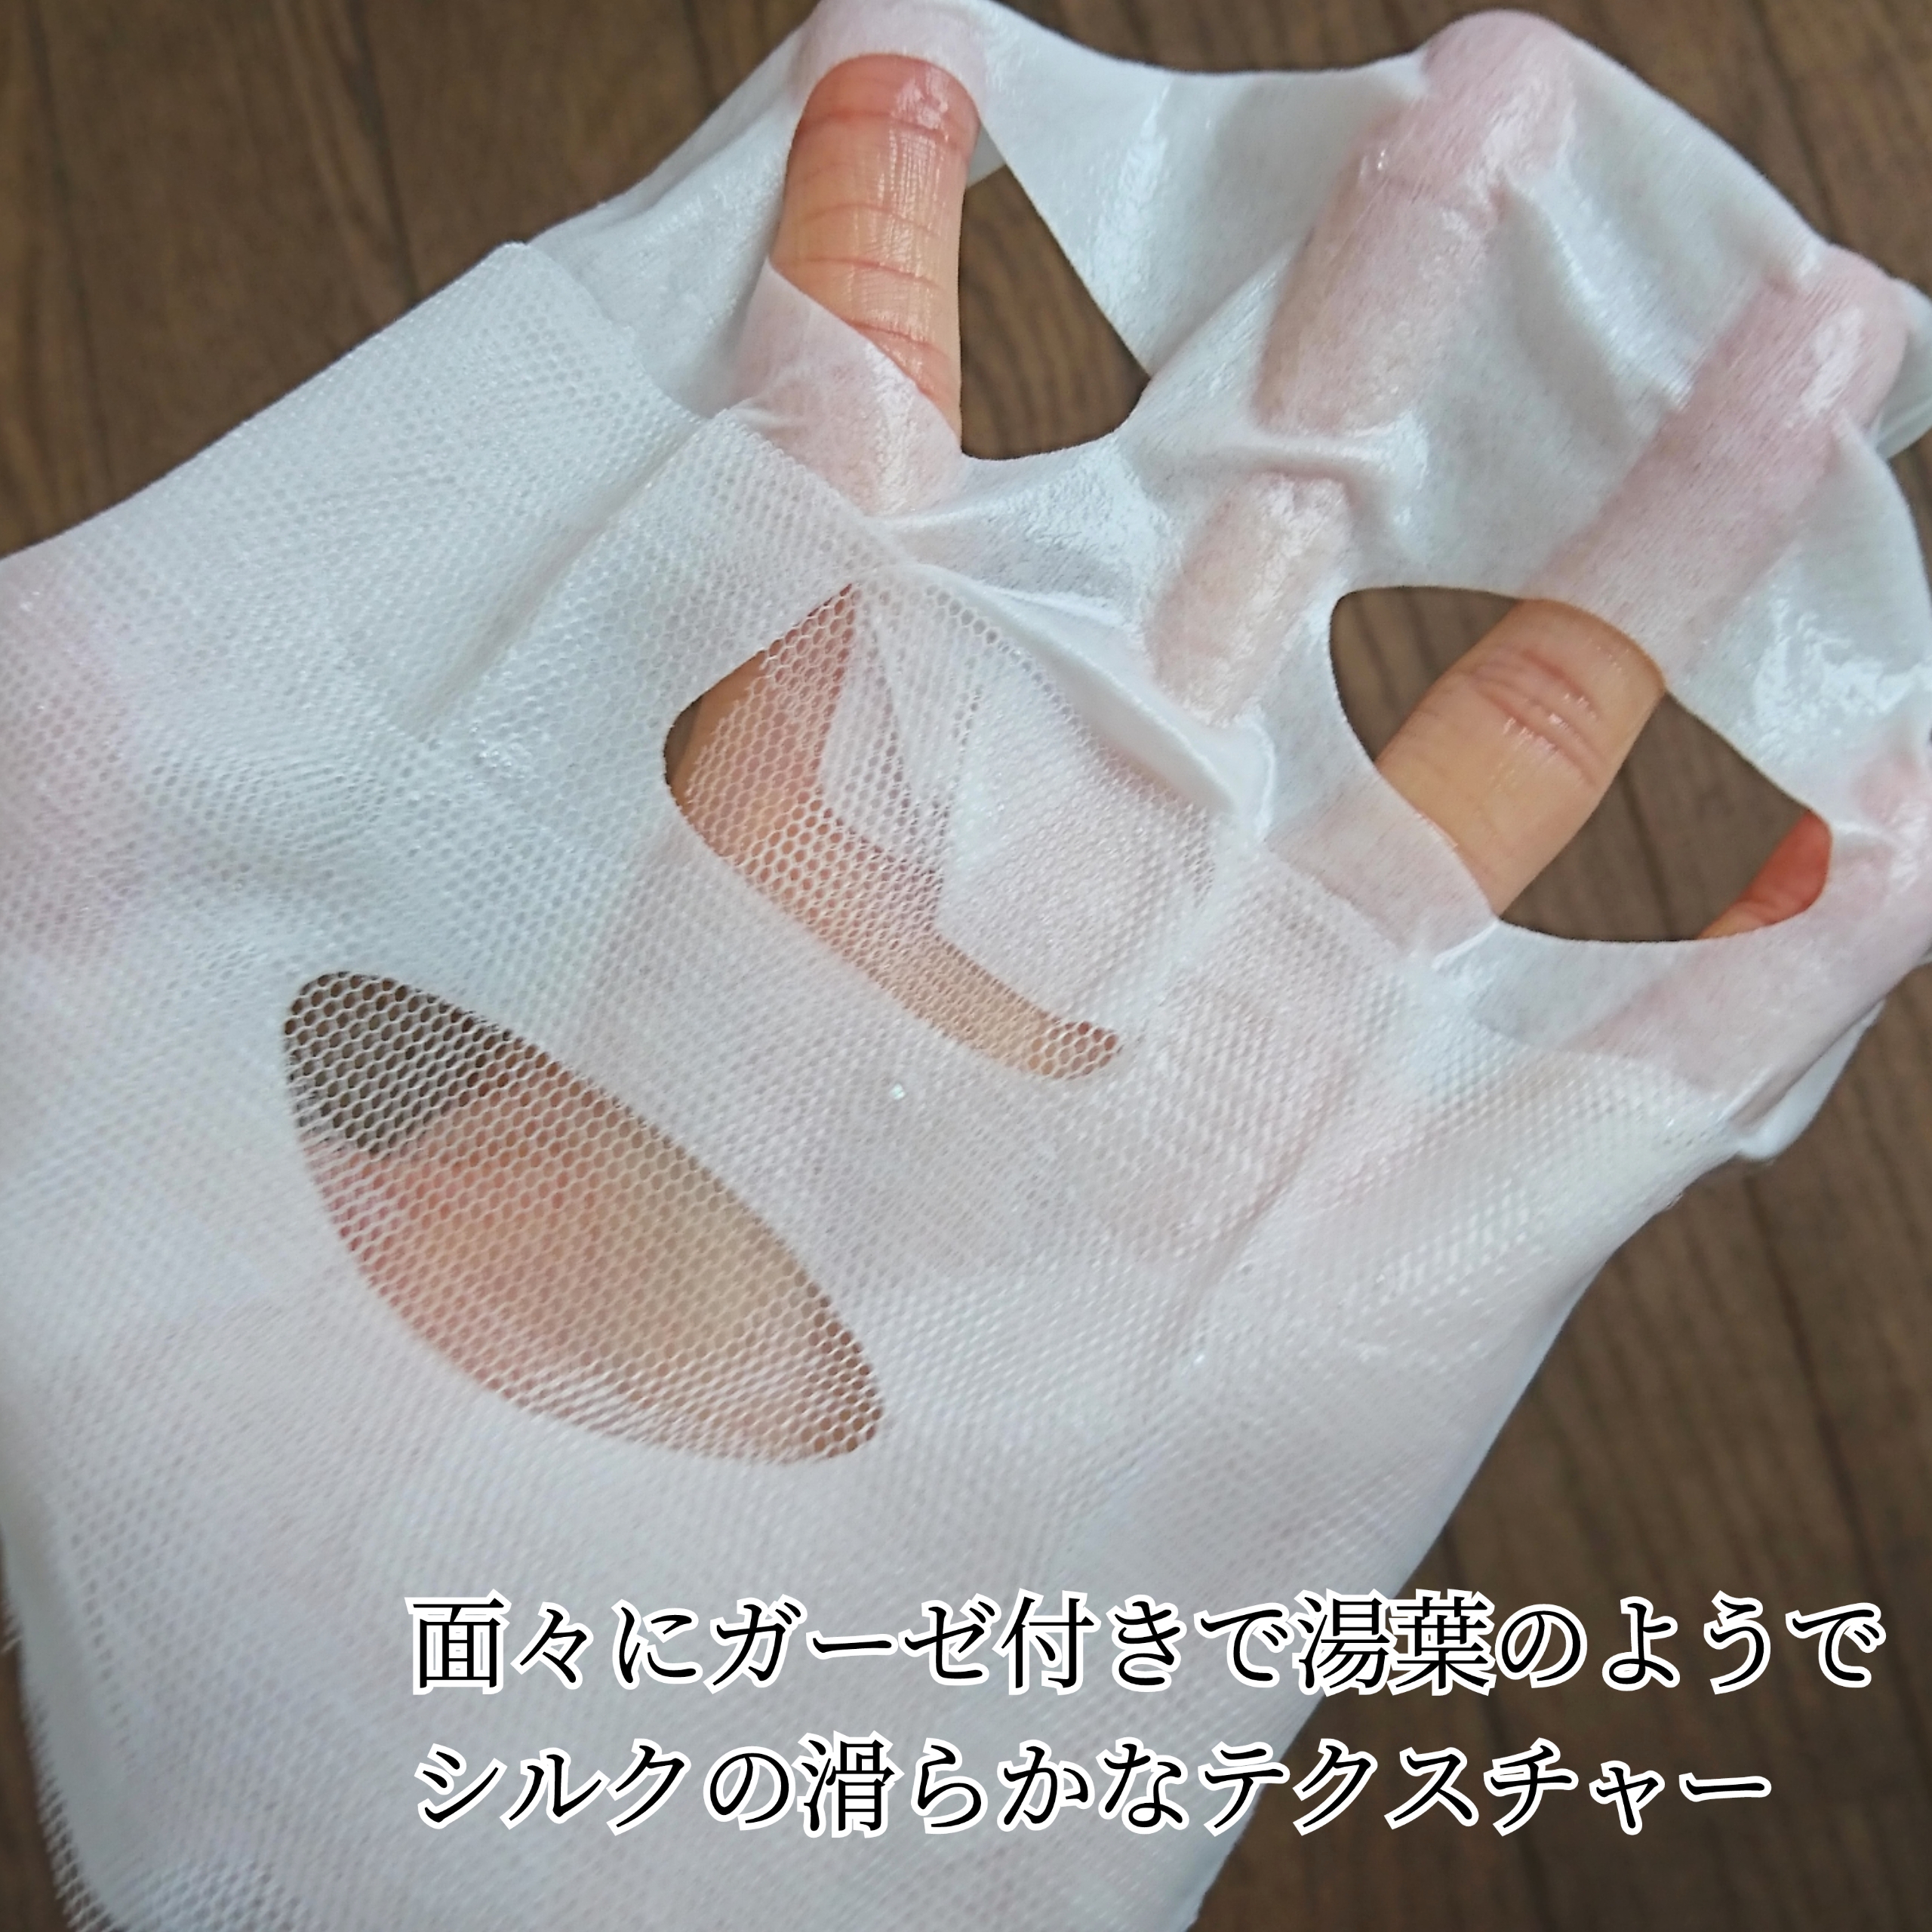 セッコク蘭エイジングケア・マスクαを使ったYuKaRi♡さんのクチコミ画像4